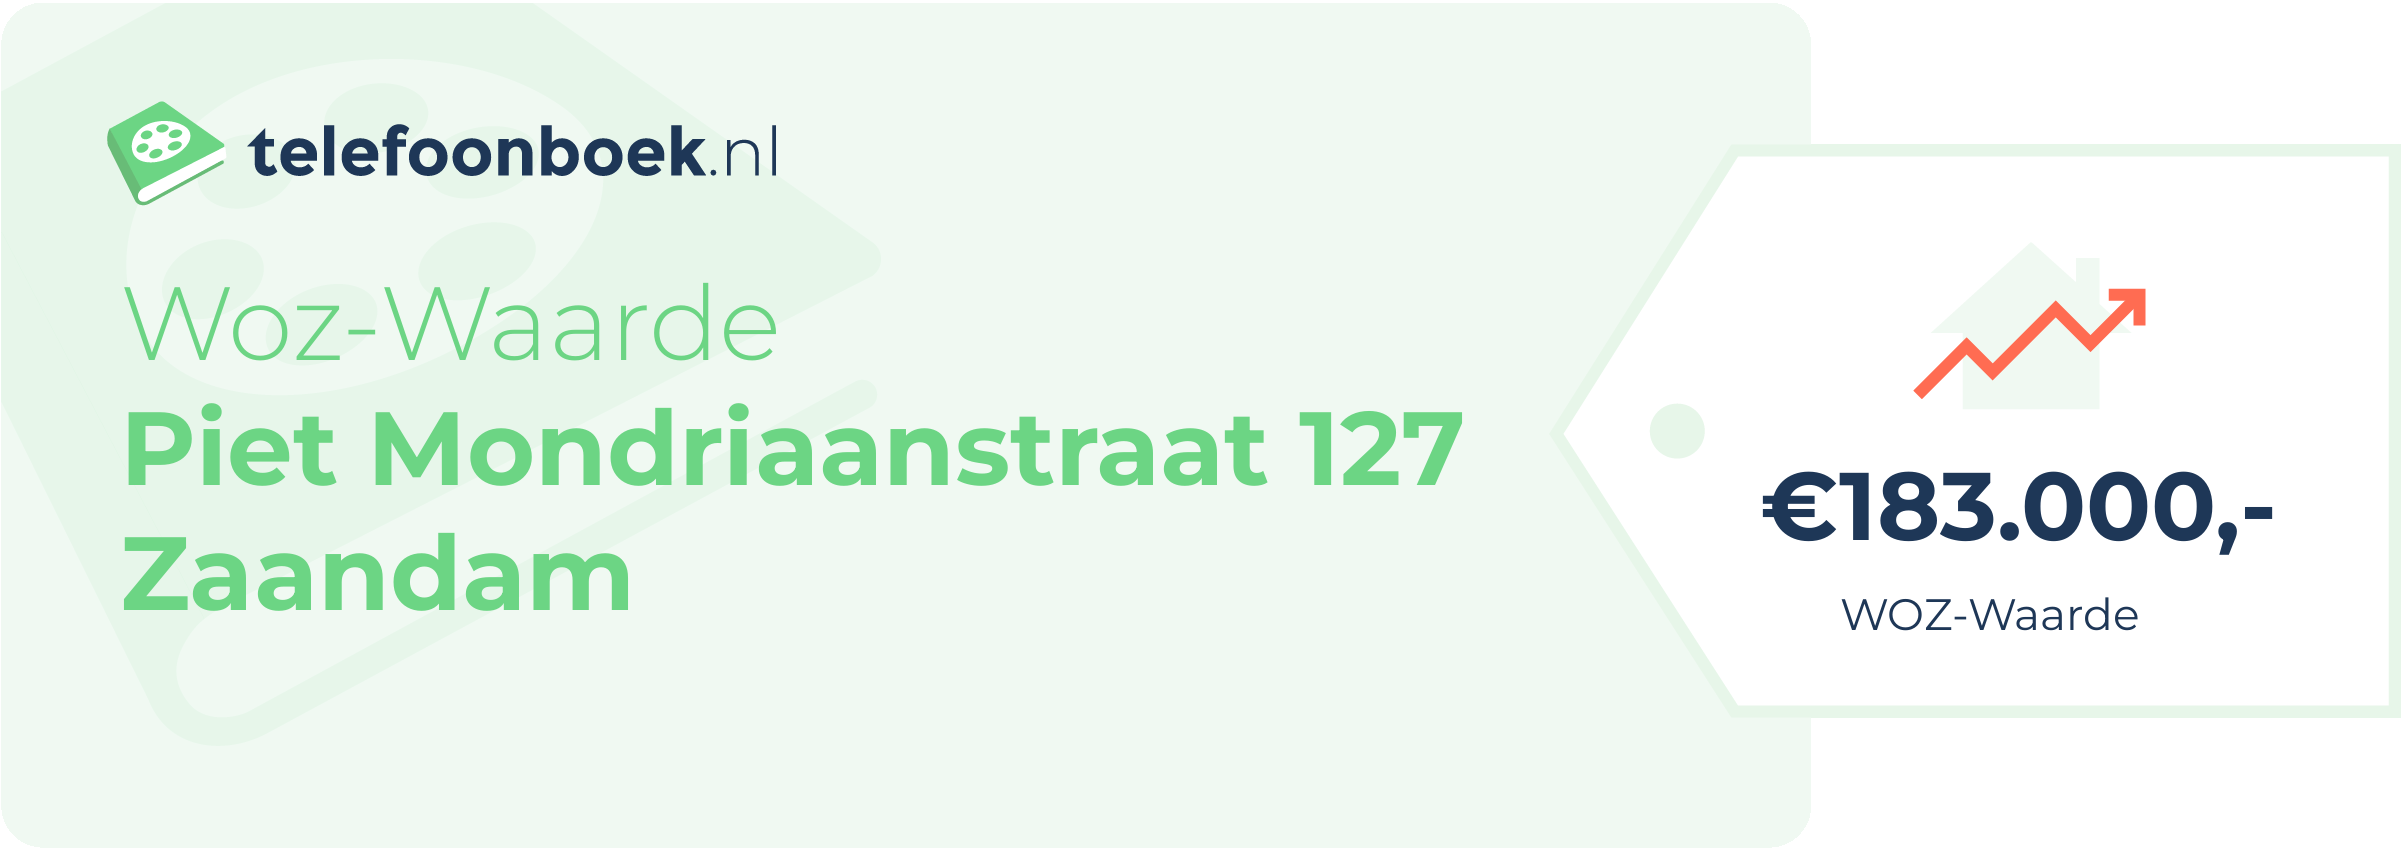 WOZ-waarde Piet Mondriaanstraat 127 Zaandam